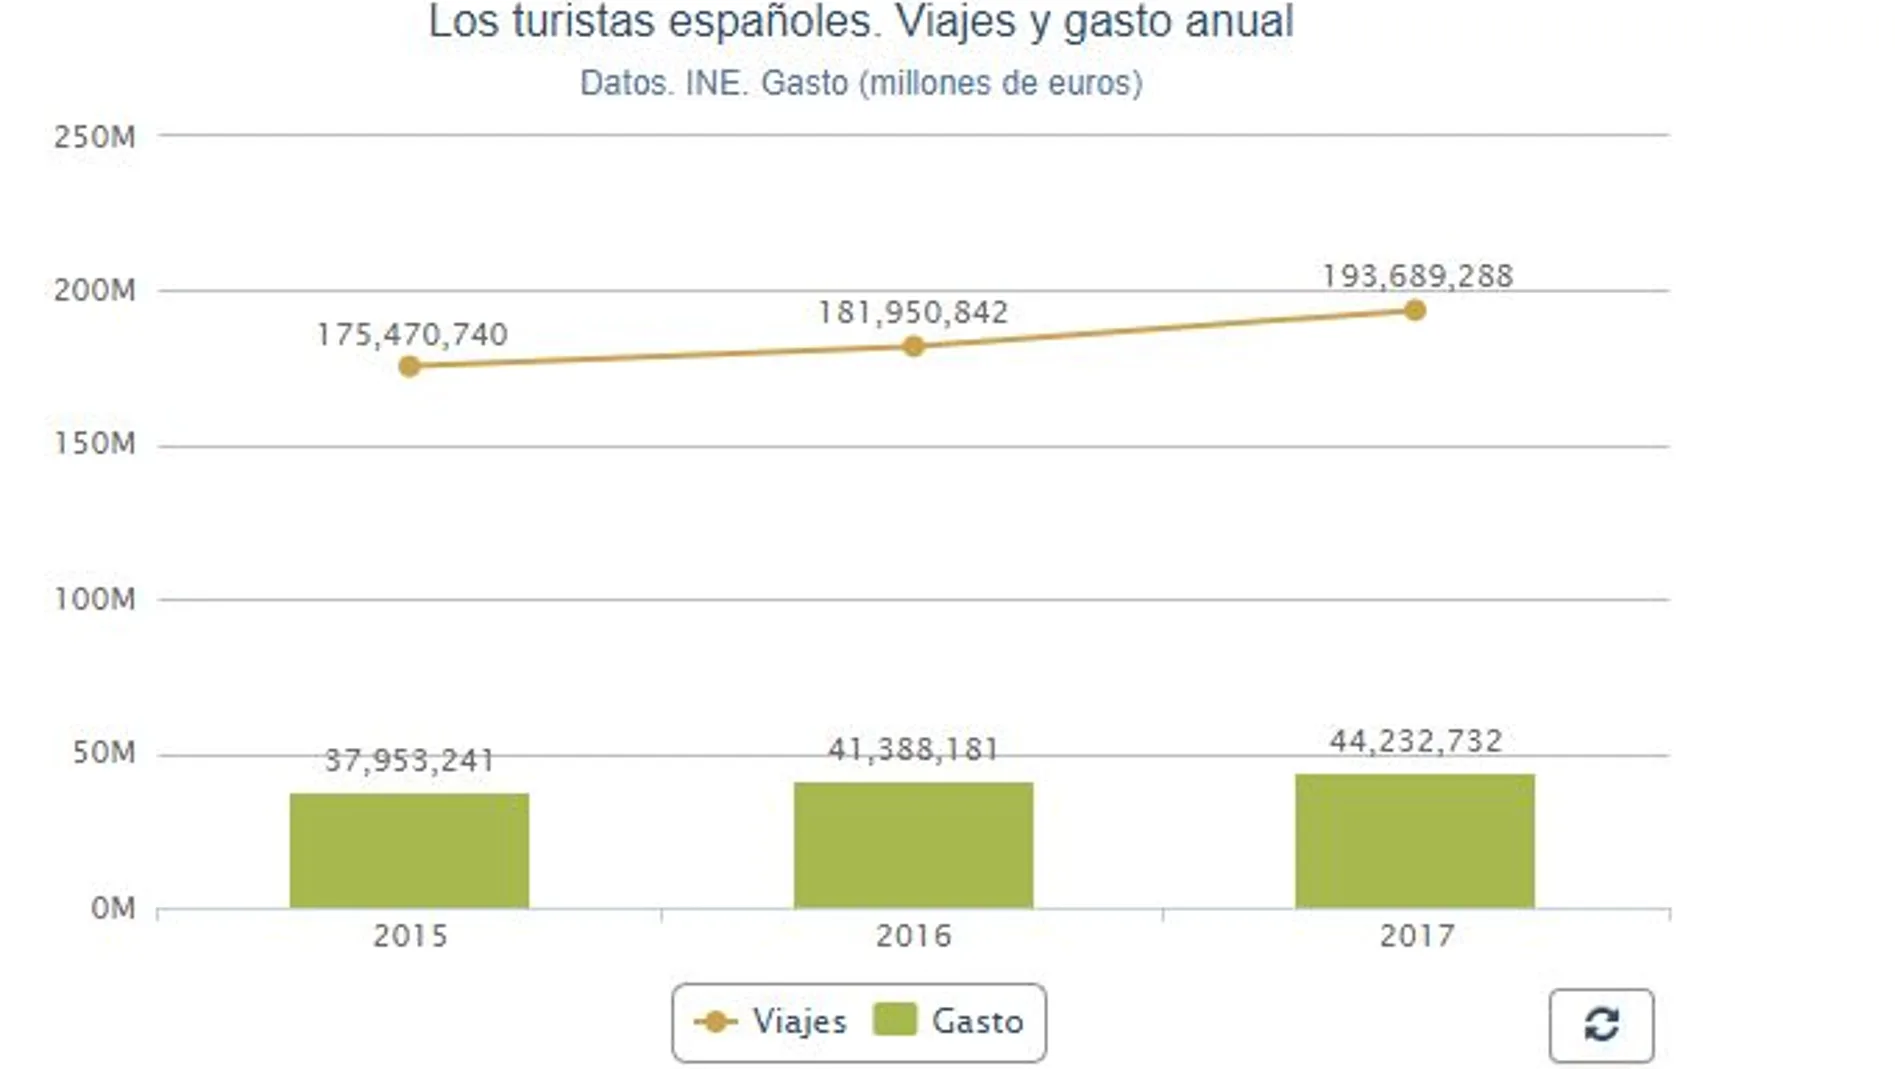 Los españoles viajaron un 6,5 % más en 2017